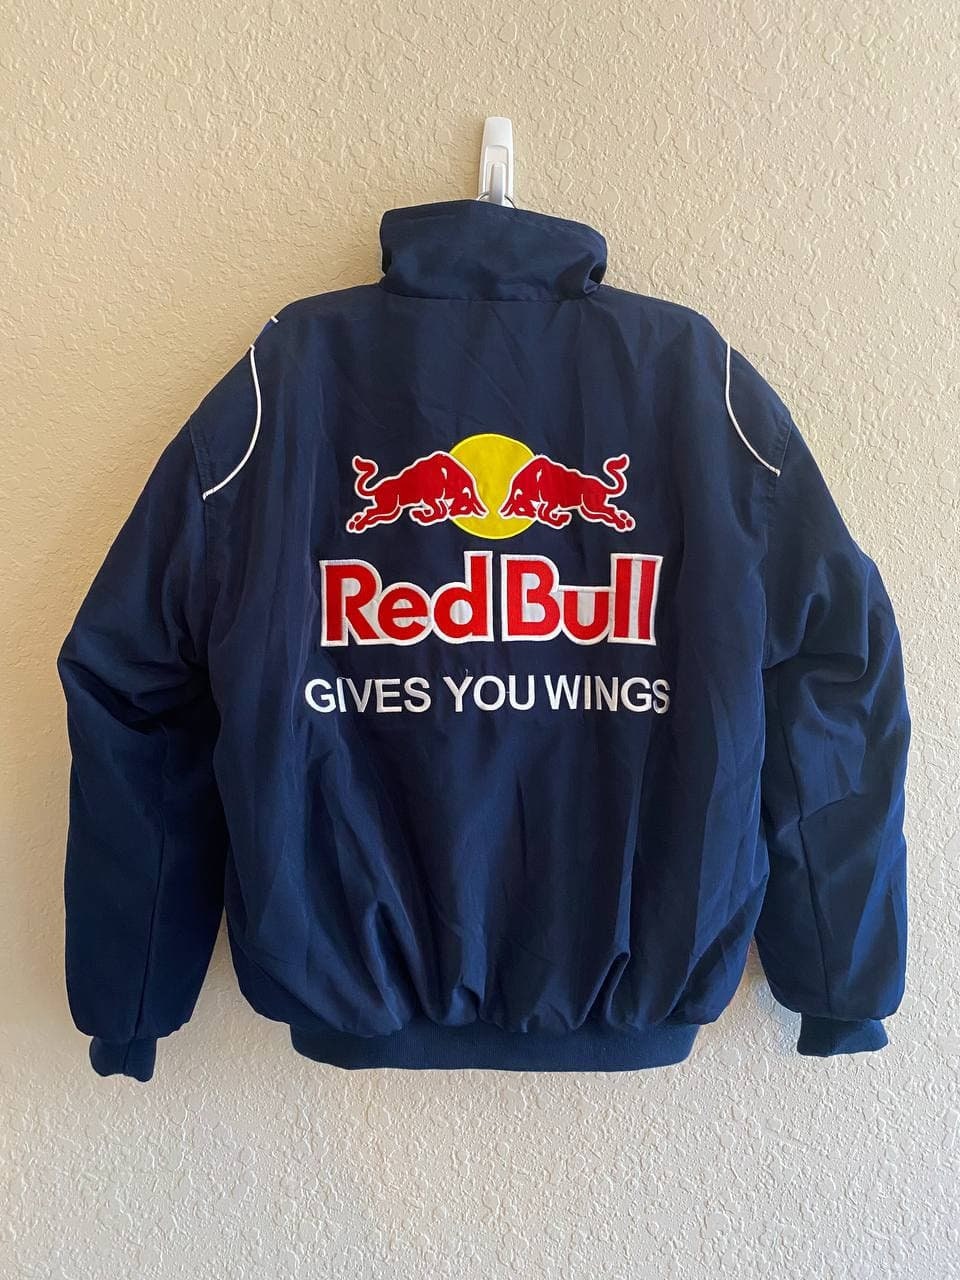 Ongeëvenaard mozaïek enthousiast Nascar Jacket Red Bull Vintage Racing Jacket 90s - Etsy